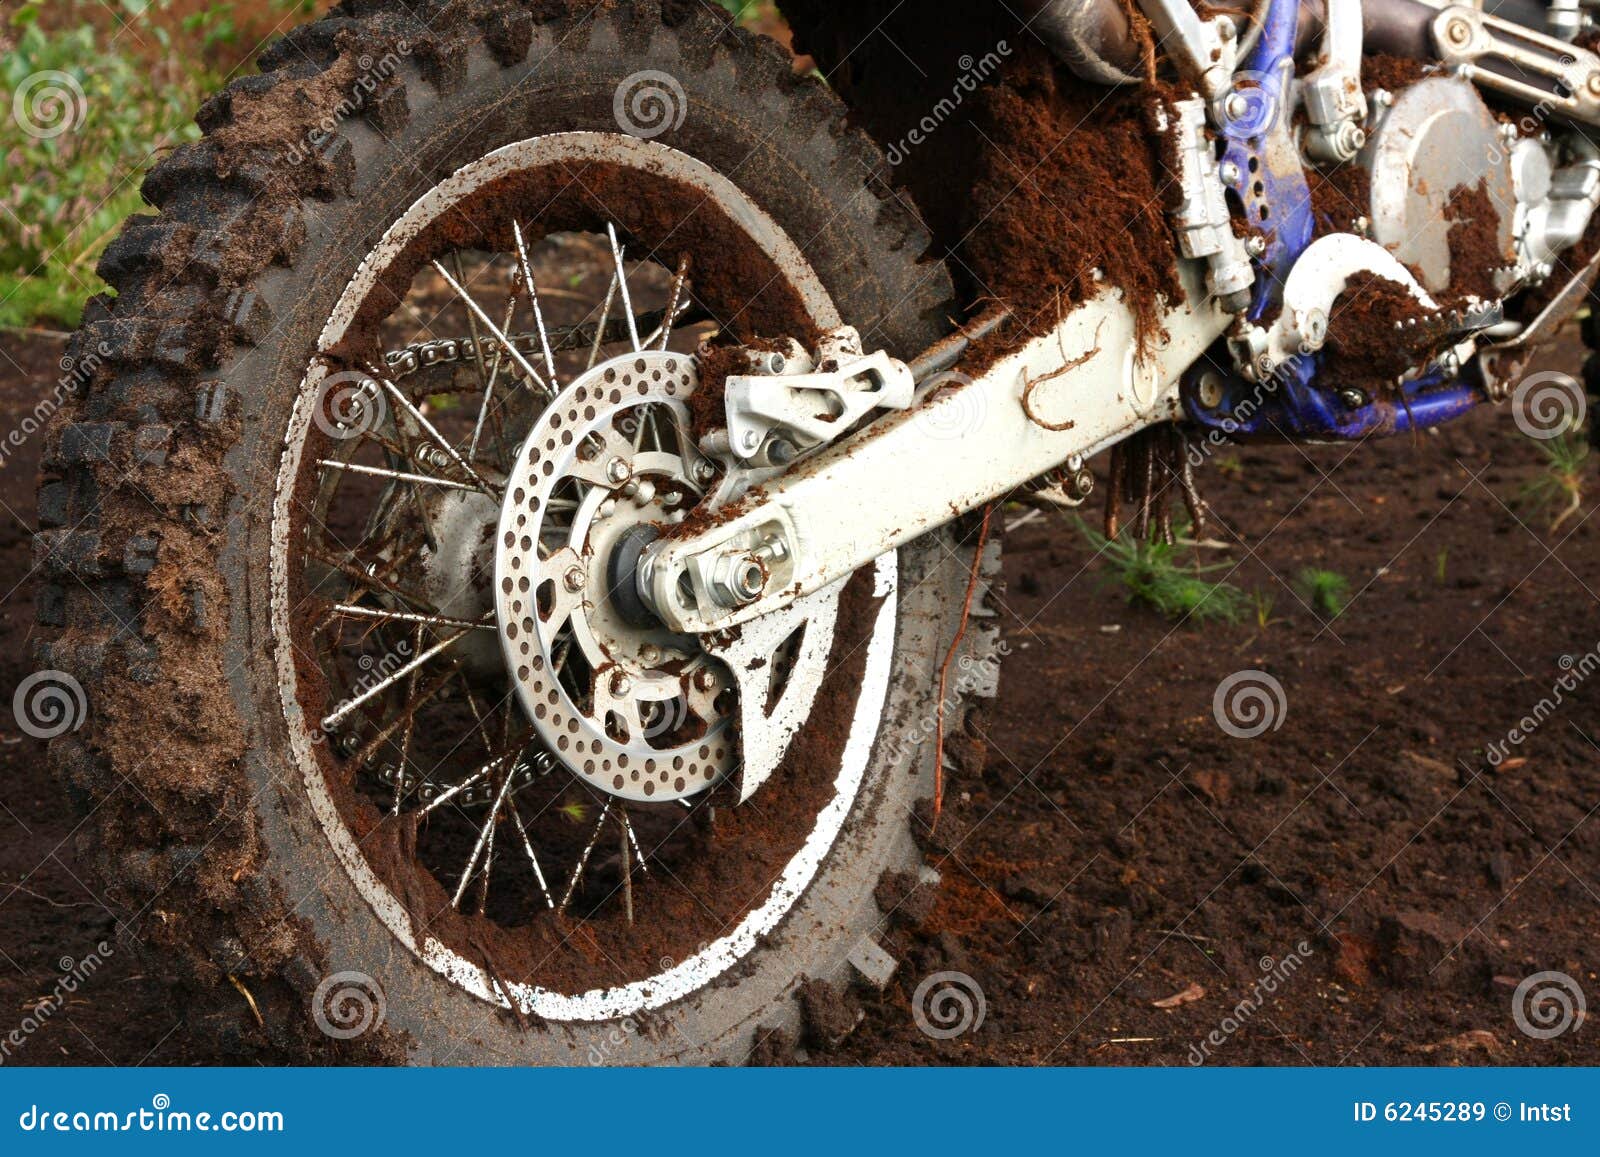 wheel dirt bike